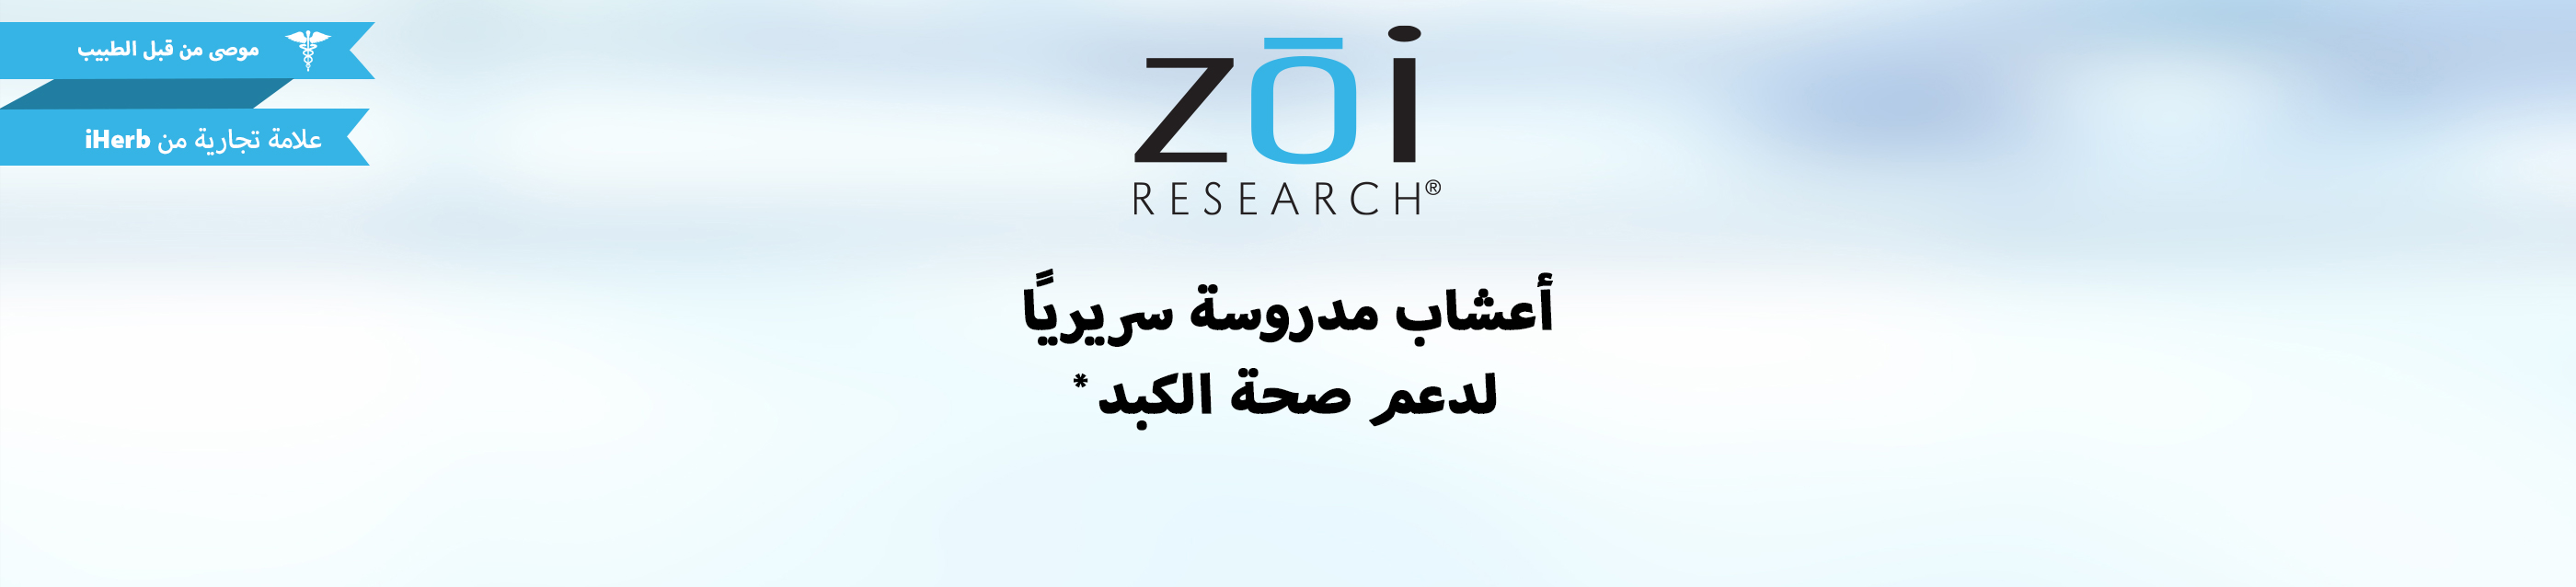 Zoi Research Detox Cleanse